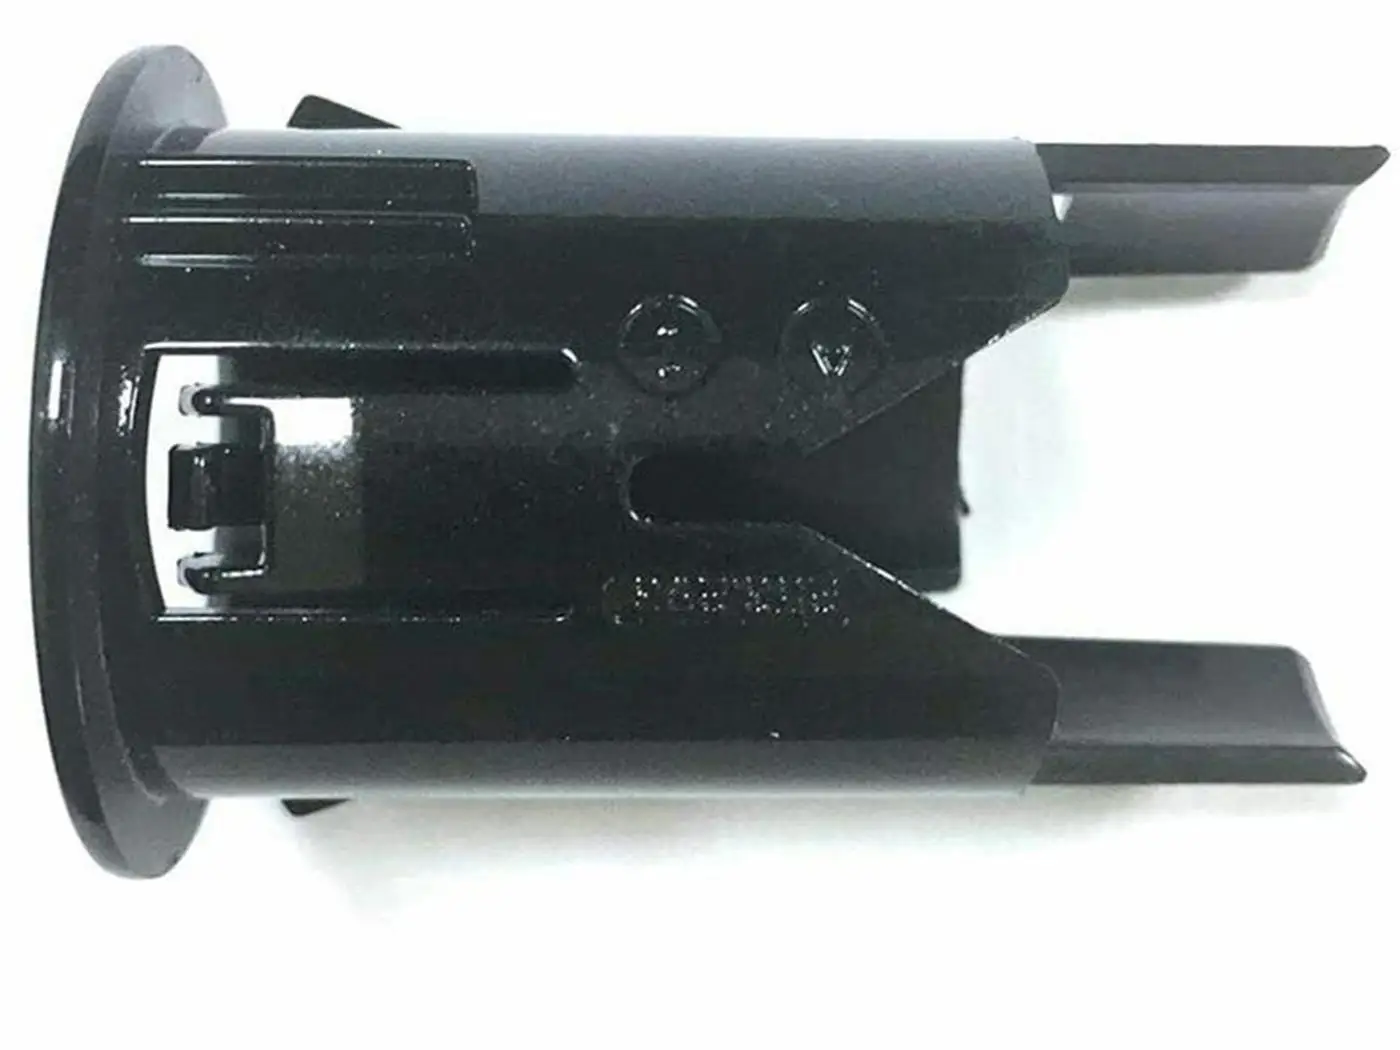 

28453-7S460 Parking Sensor Bracket Retainer Holder for Nissan Infiniti 2004-201